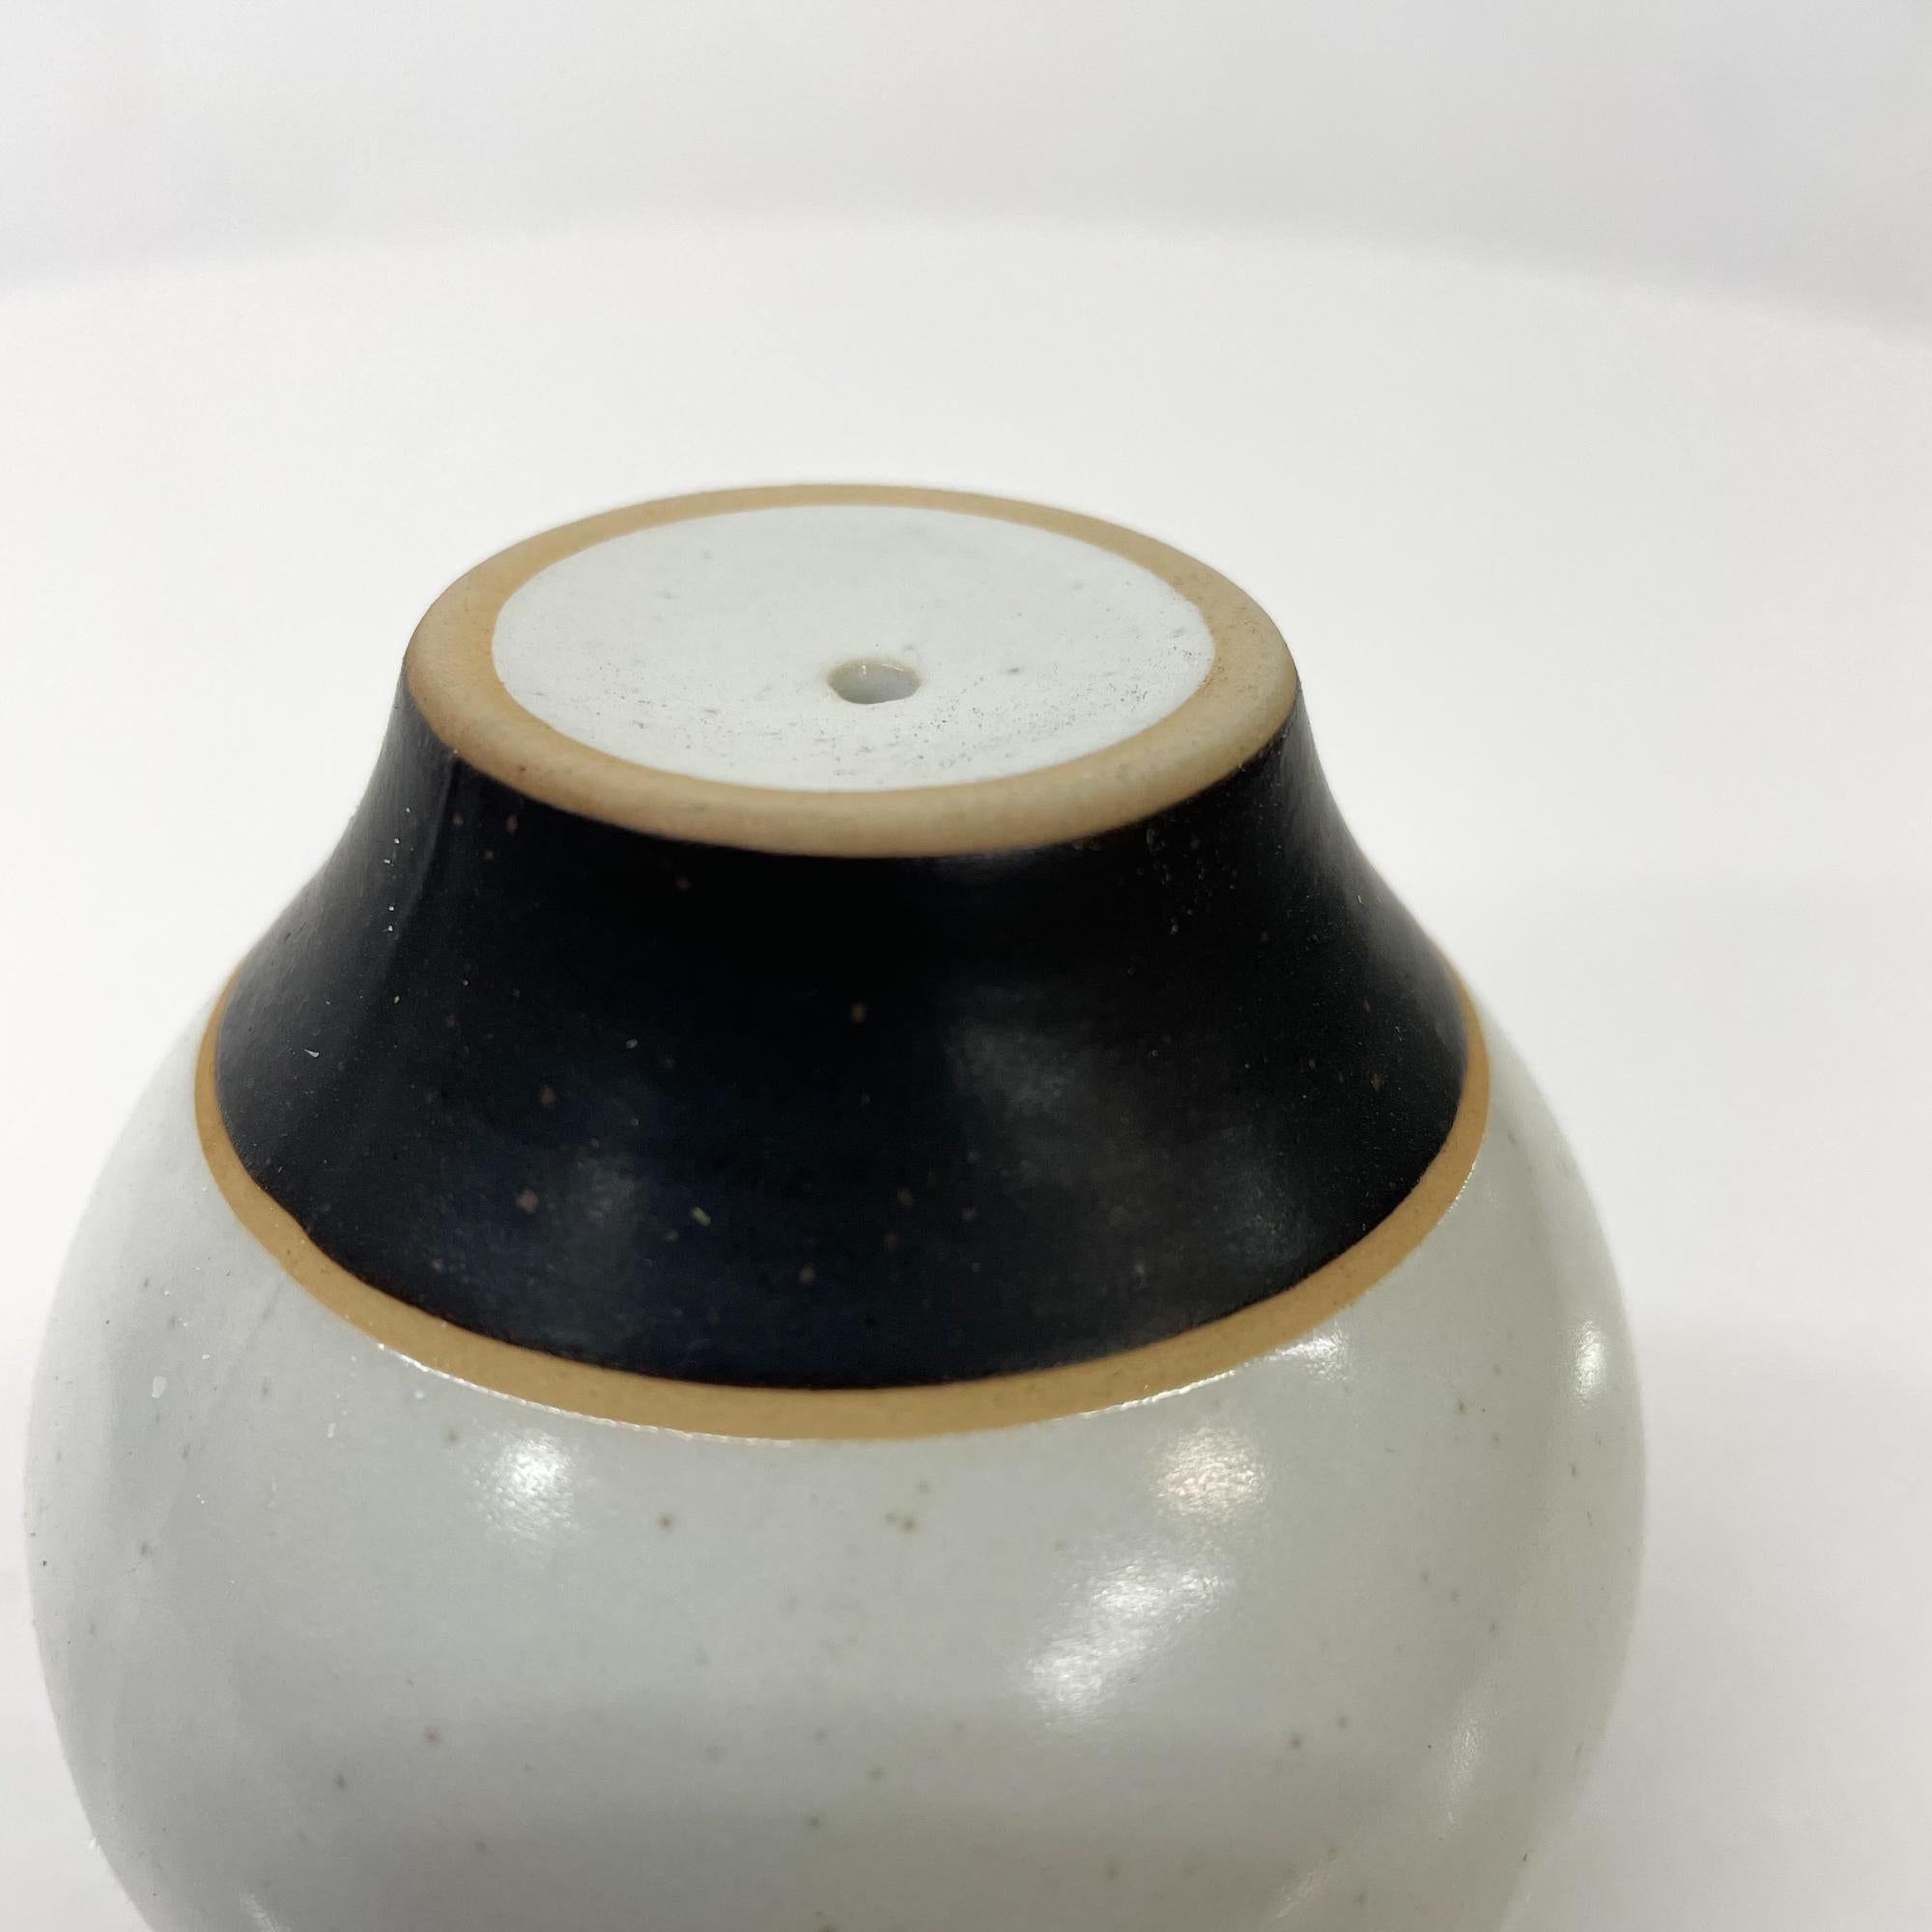 1980s Modernist Pottery Salt or Pepper Shaker Post Modern Design Black Gray 5